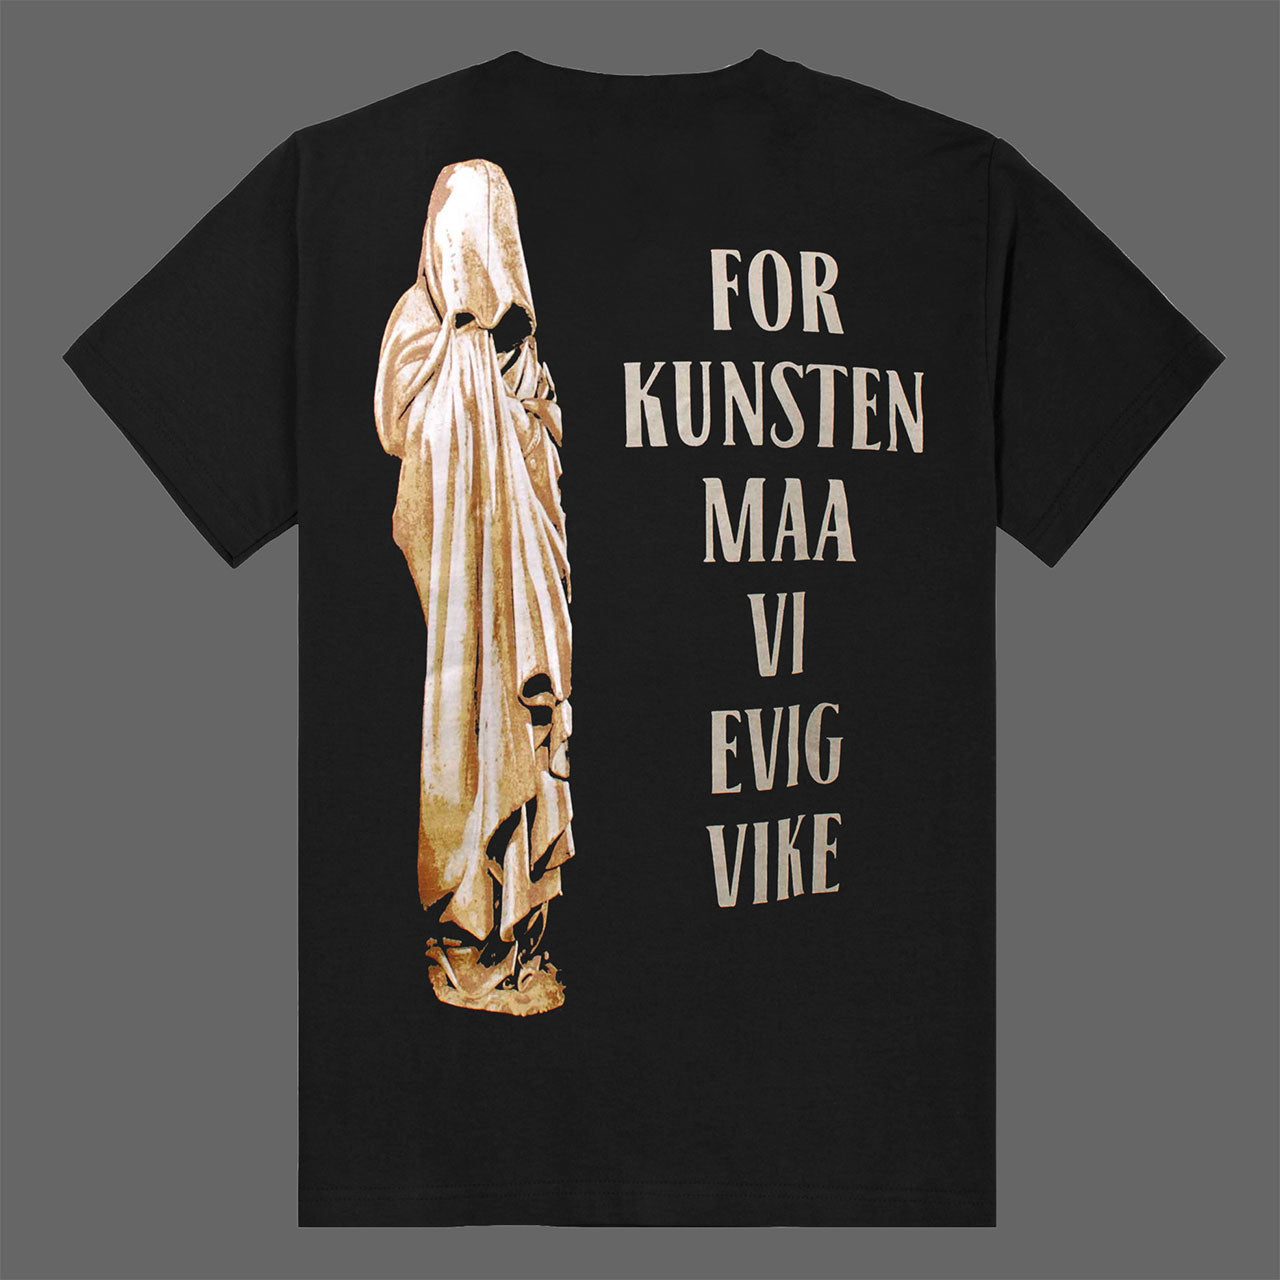 Kvist - For kunsten maa vi evig vike (T-Shirt)